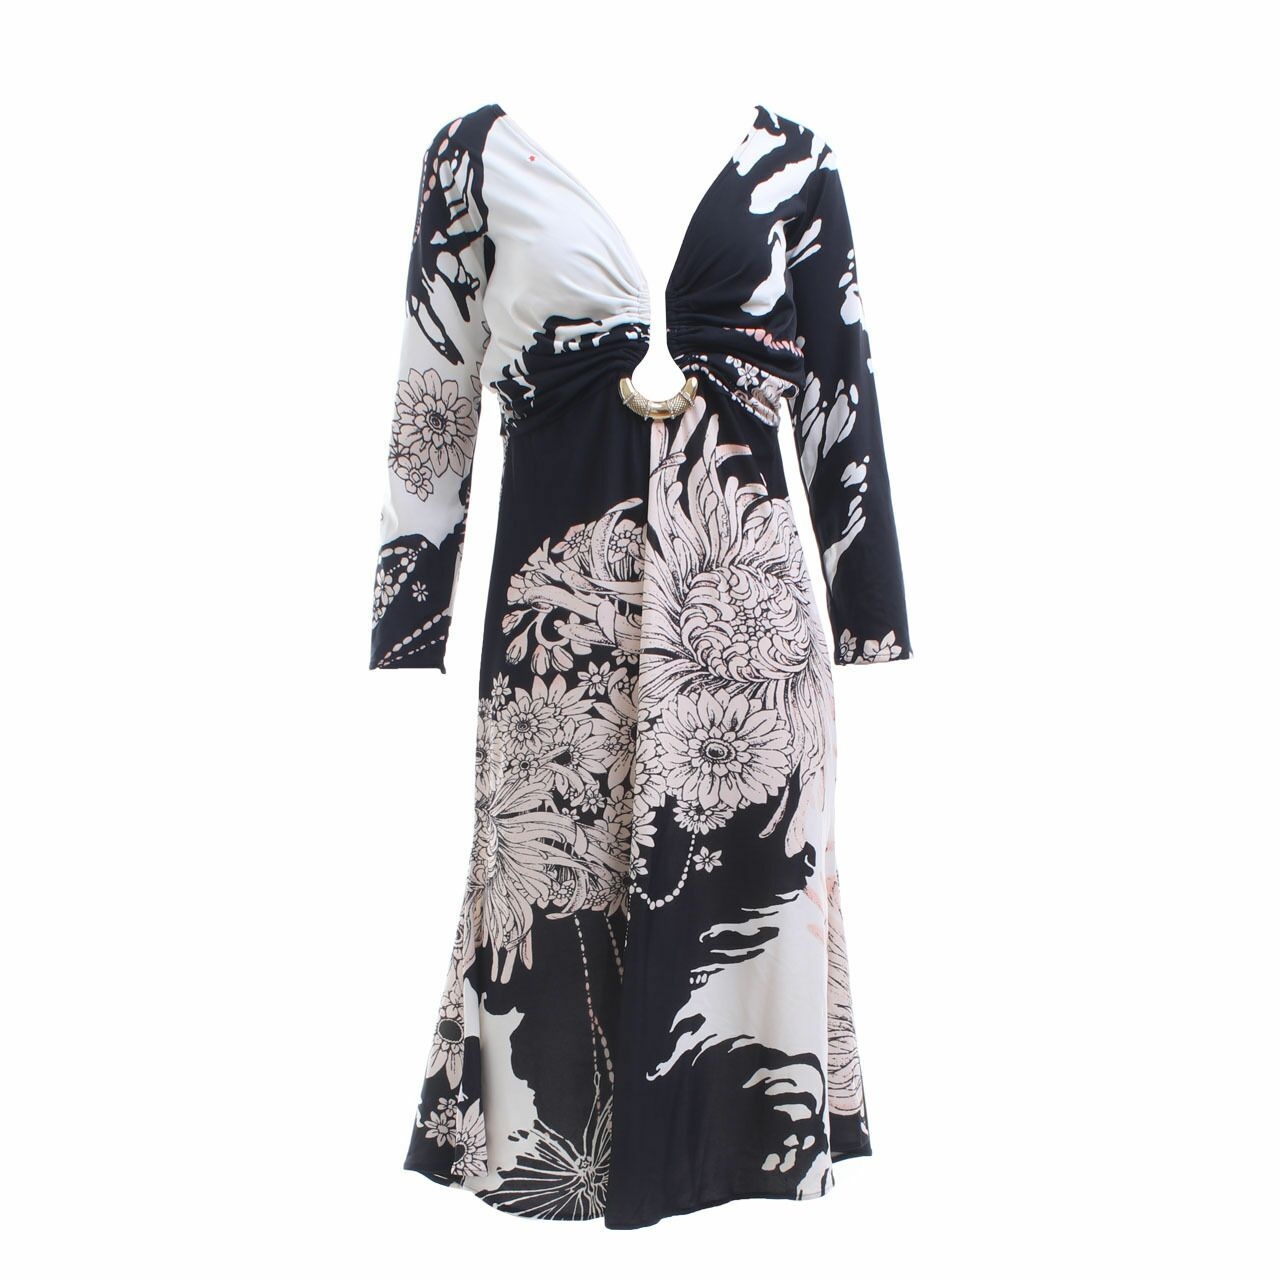 Roberto Cavalli Black & White Patterned Mini Dress